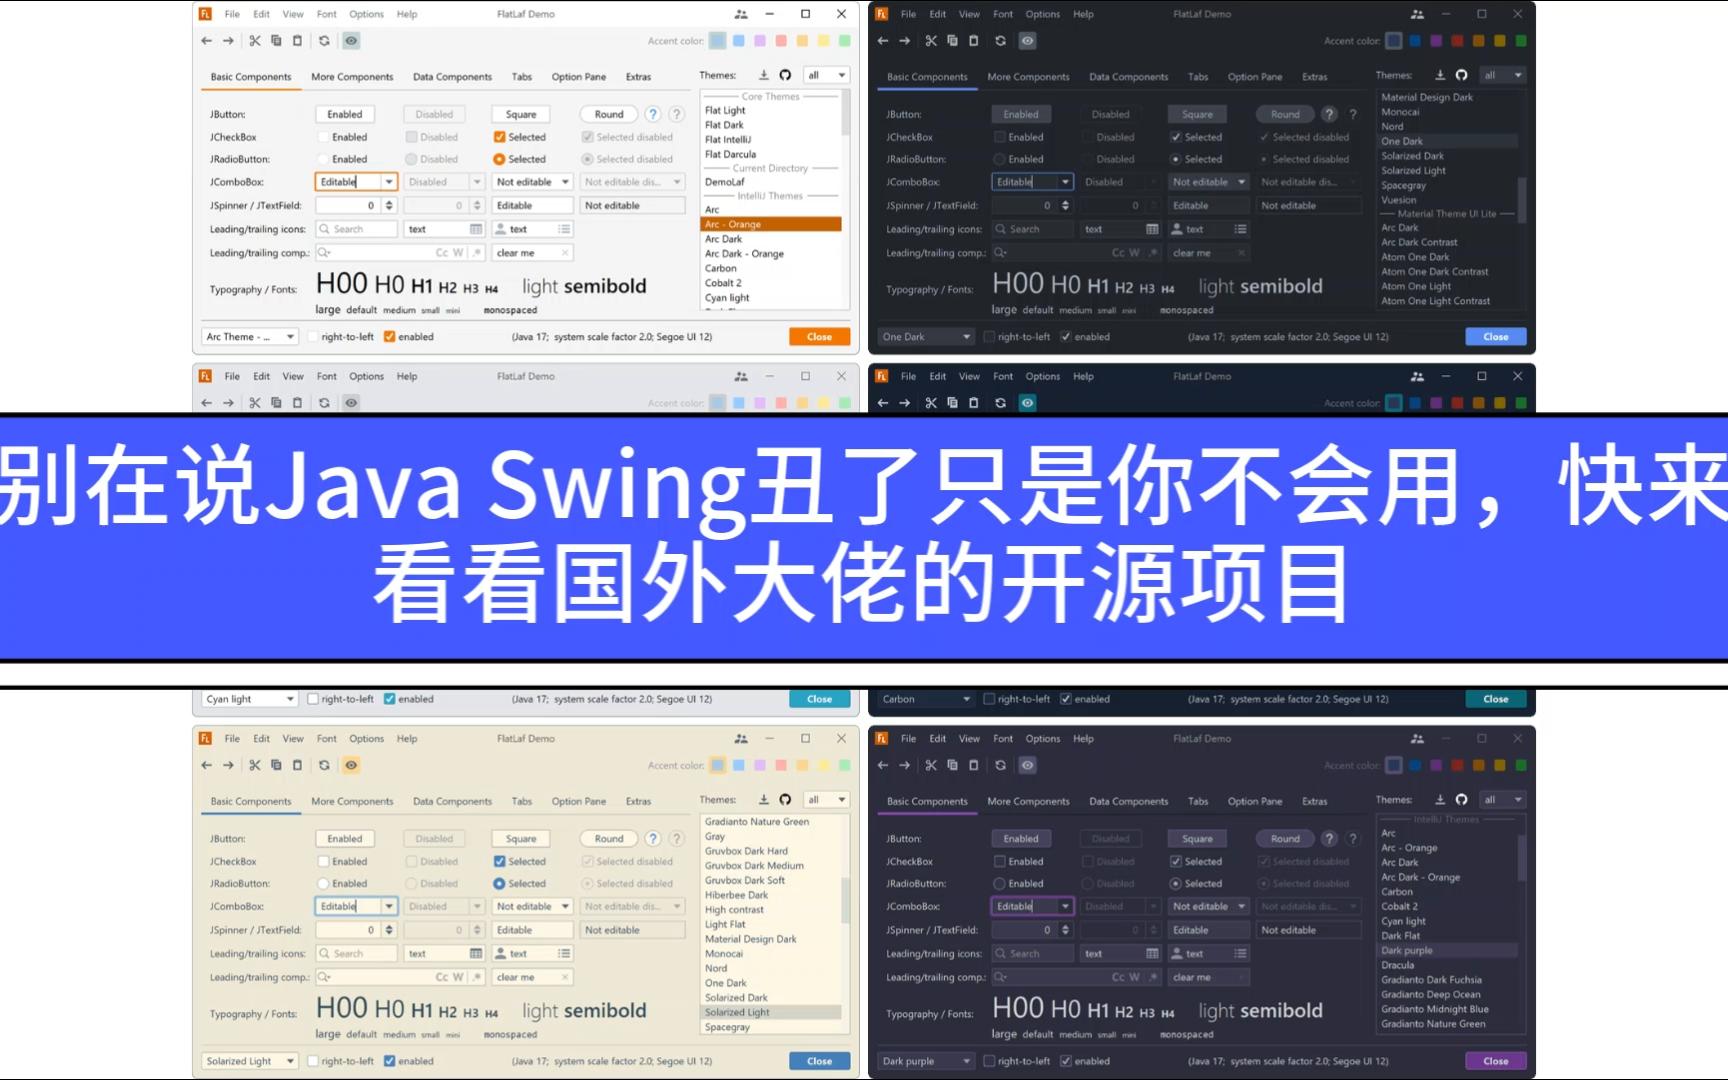 别在说Java Swing丑了，只是你不会用，快来看看国外大佬的开源项目